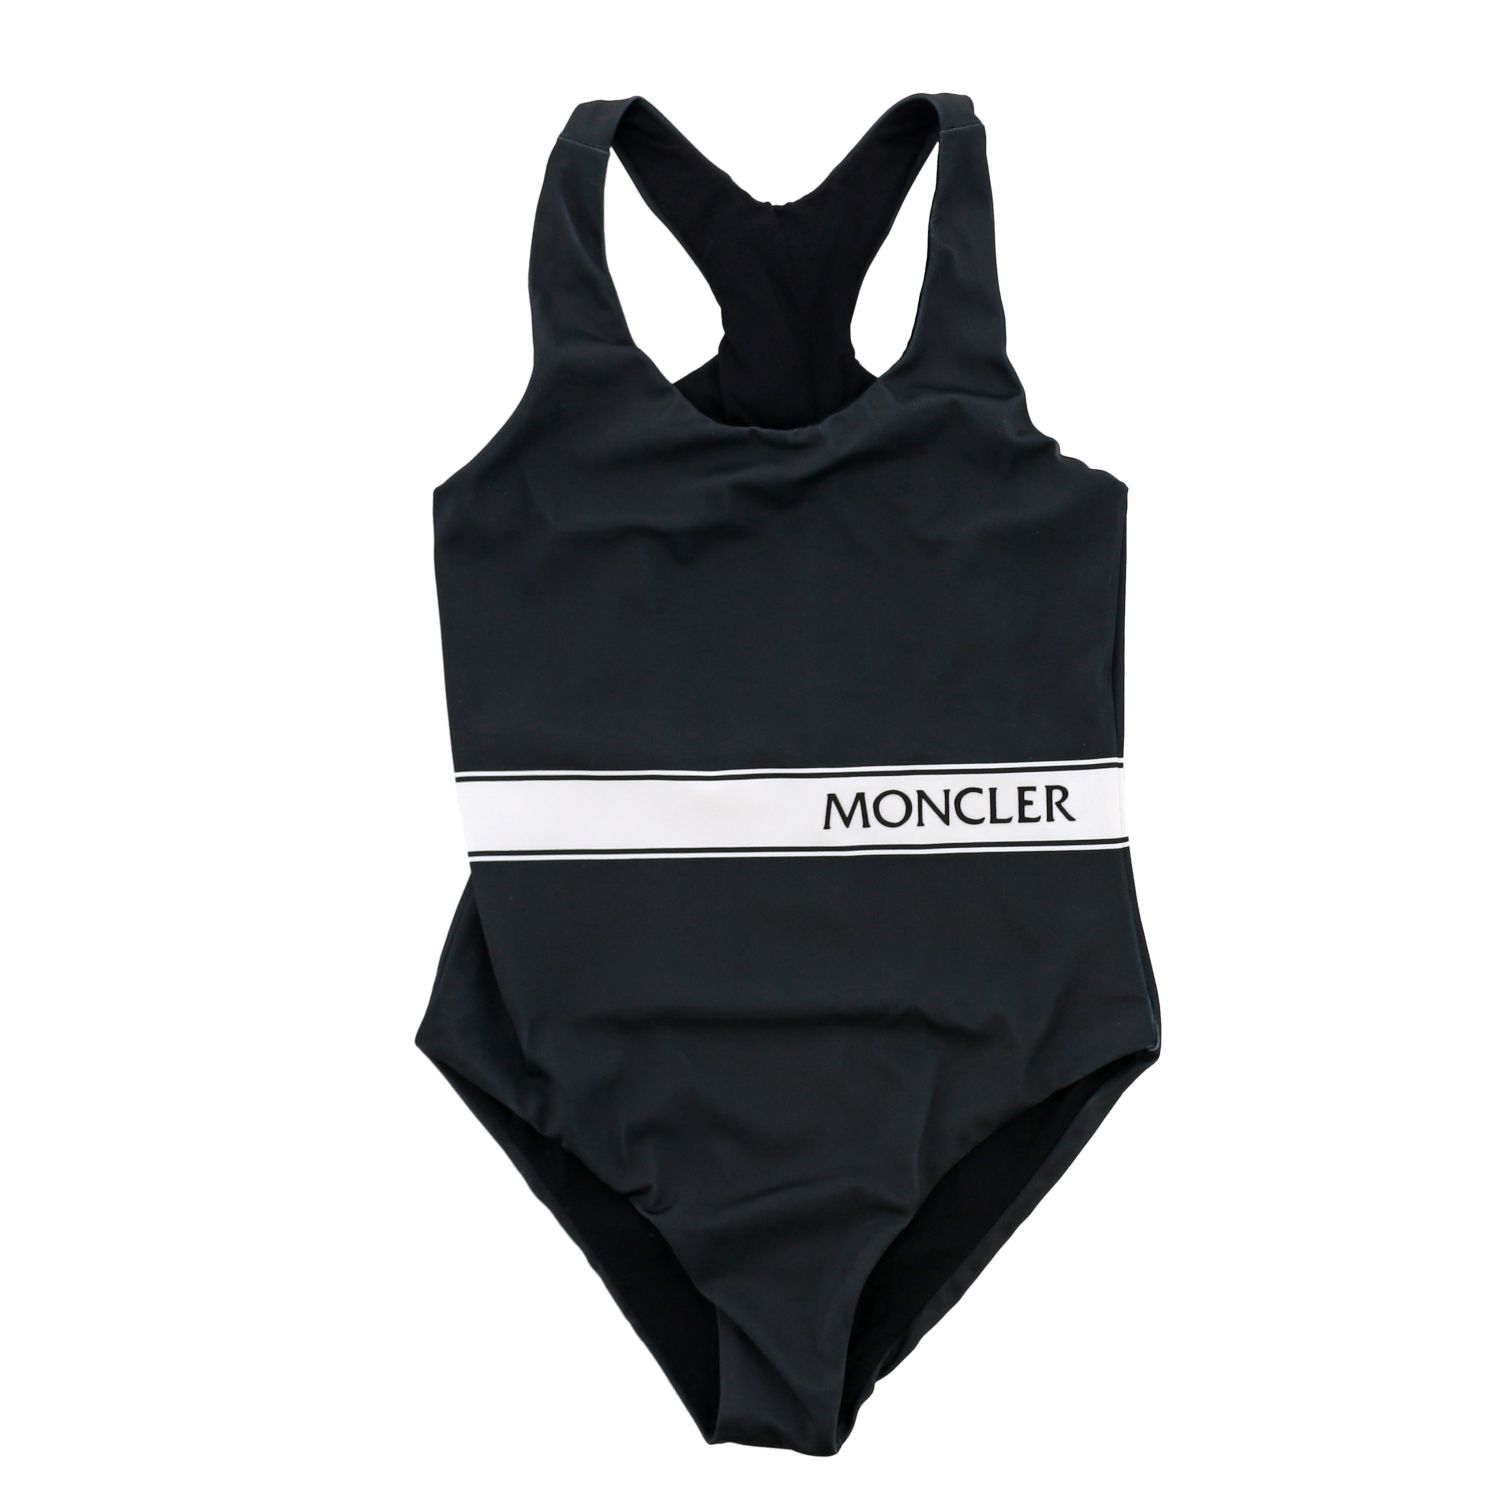 moncler swimsuit